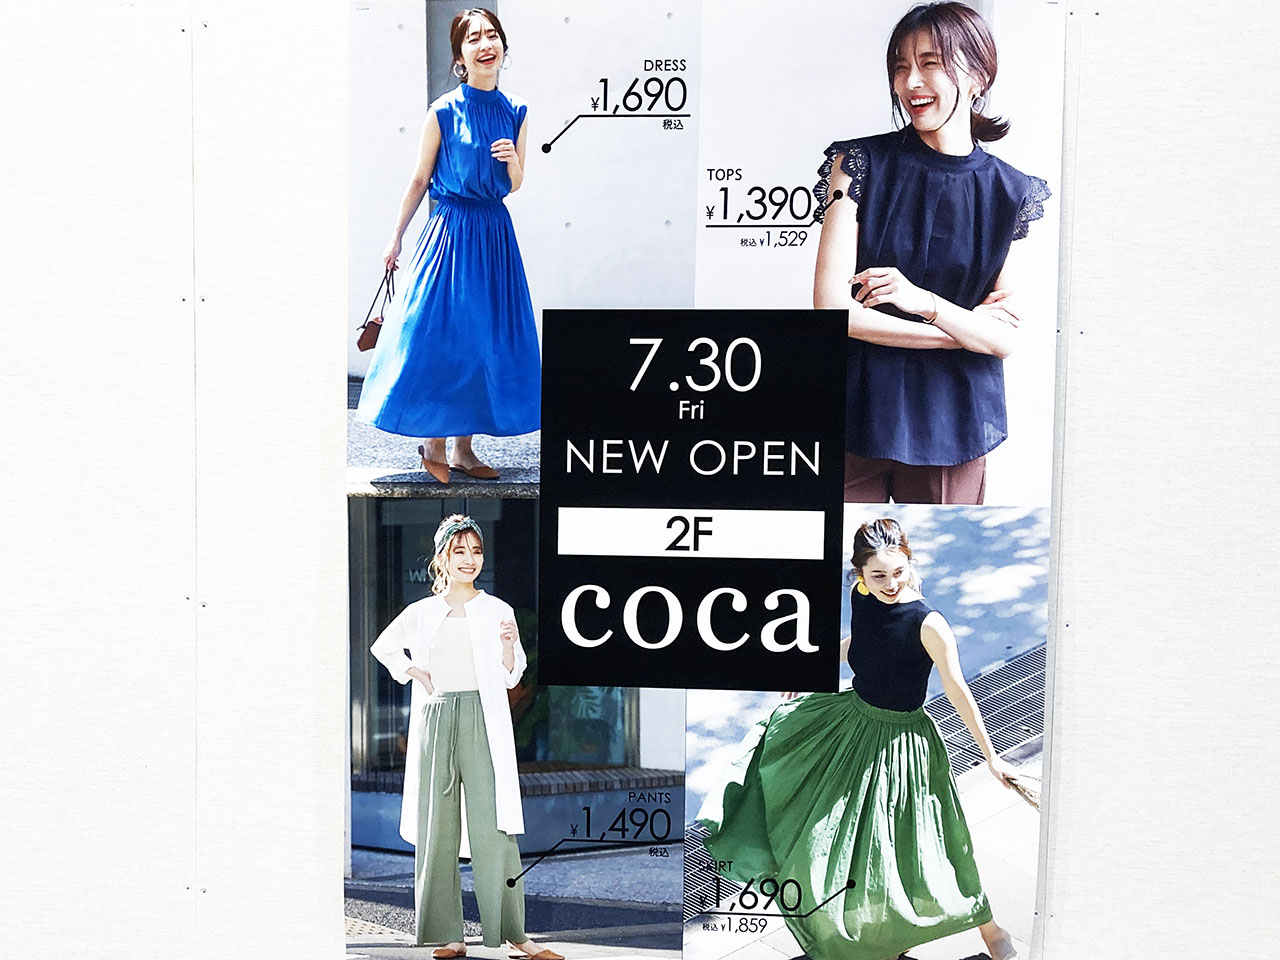 聖蹟桜ヶ丘OPA2階GU跡地に大人のためのレディースファッション『COCA』がオープンするそうです♪